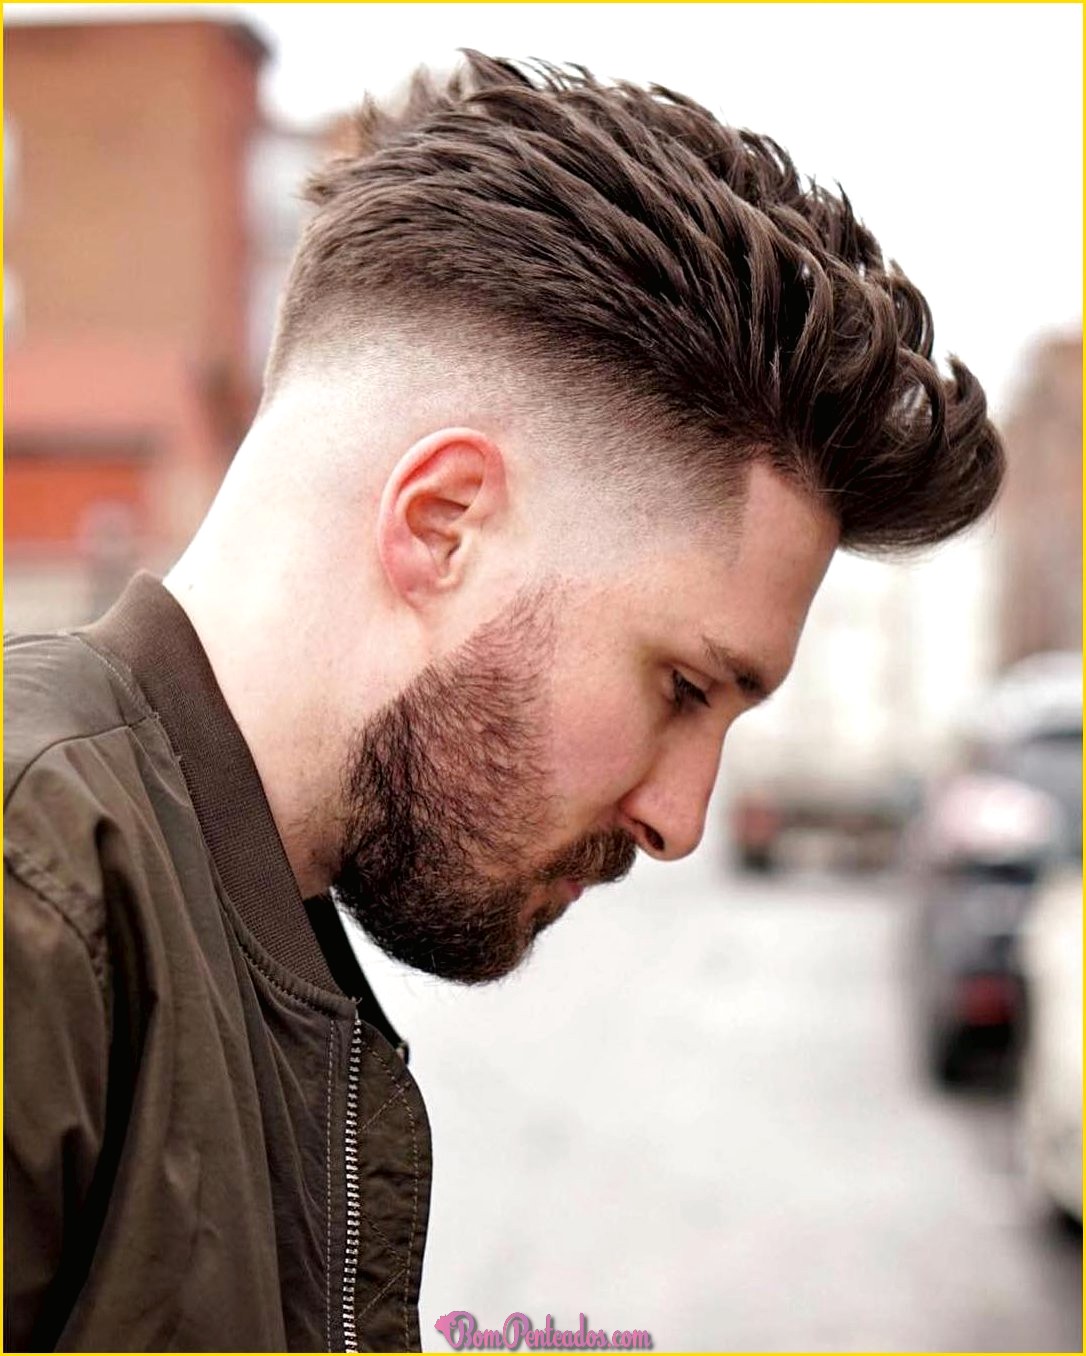 Tipos de cortes de cabelo masculinos